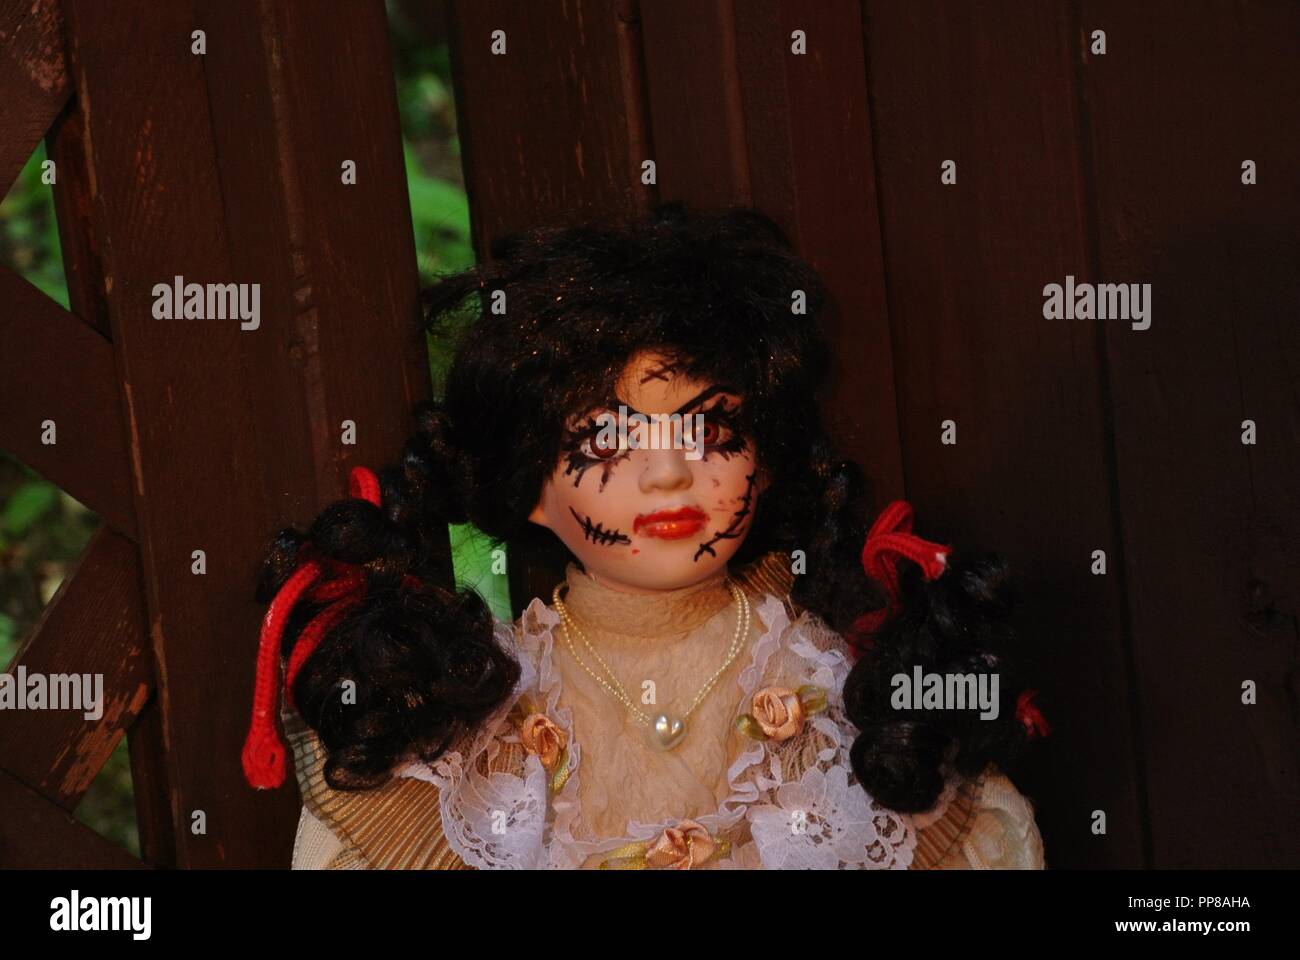 Un primer plano de una antigua muñeca de porcelana con largo cabello negro y un terrorífico, hermoso rostro con cicatrices;, vestida de un vestido vintage blanco, Halloween Foto de stock